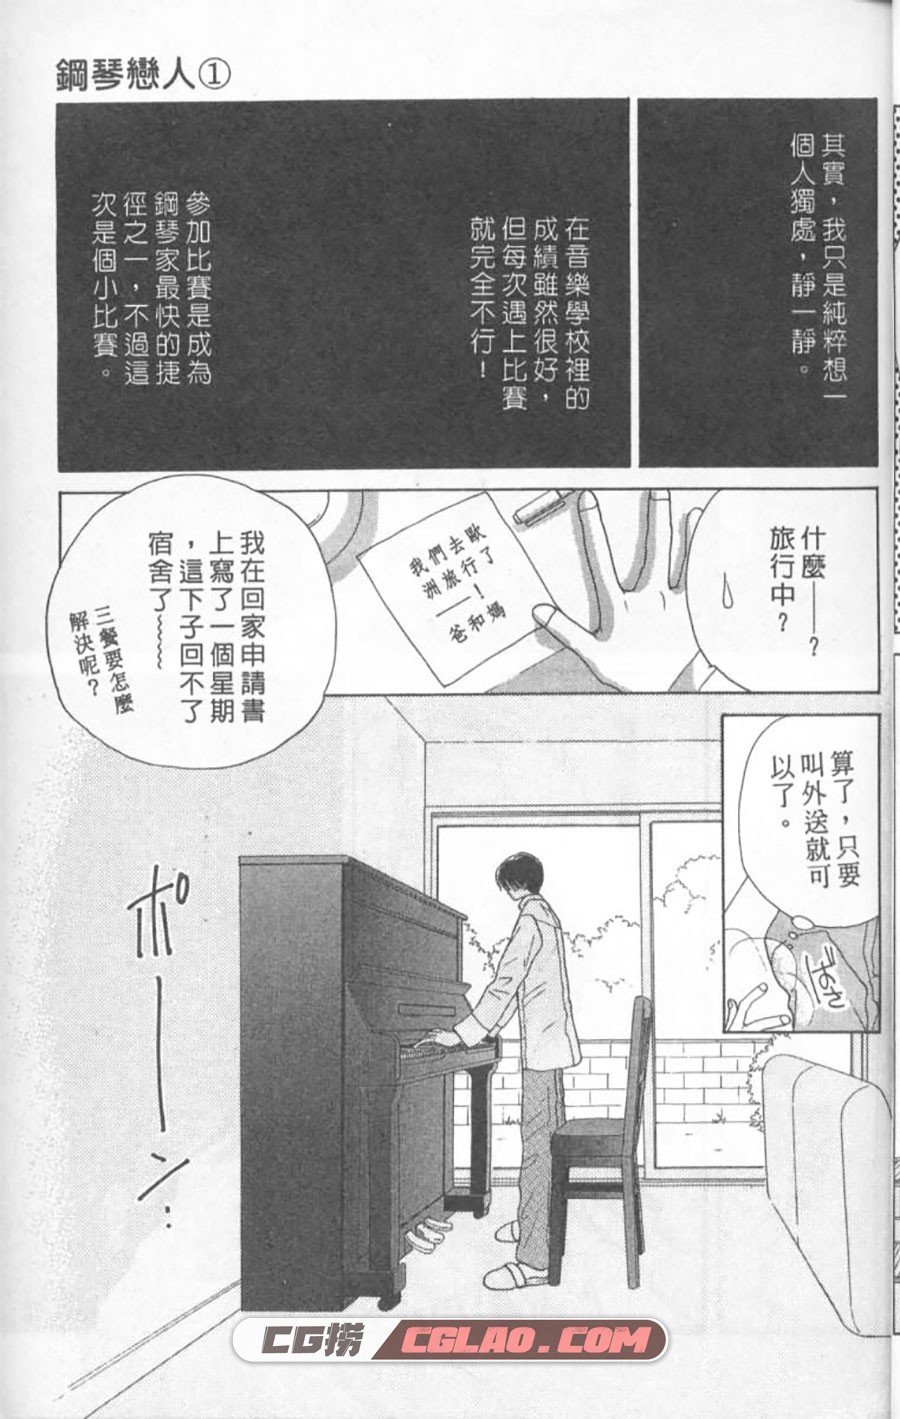 钢琴恋人 喜多尚江 1-2卷 漫画已完结全部下载 百度网盘,Piano01-004.jpg